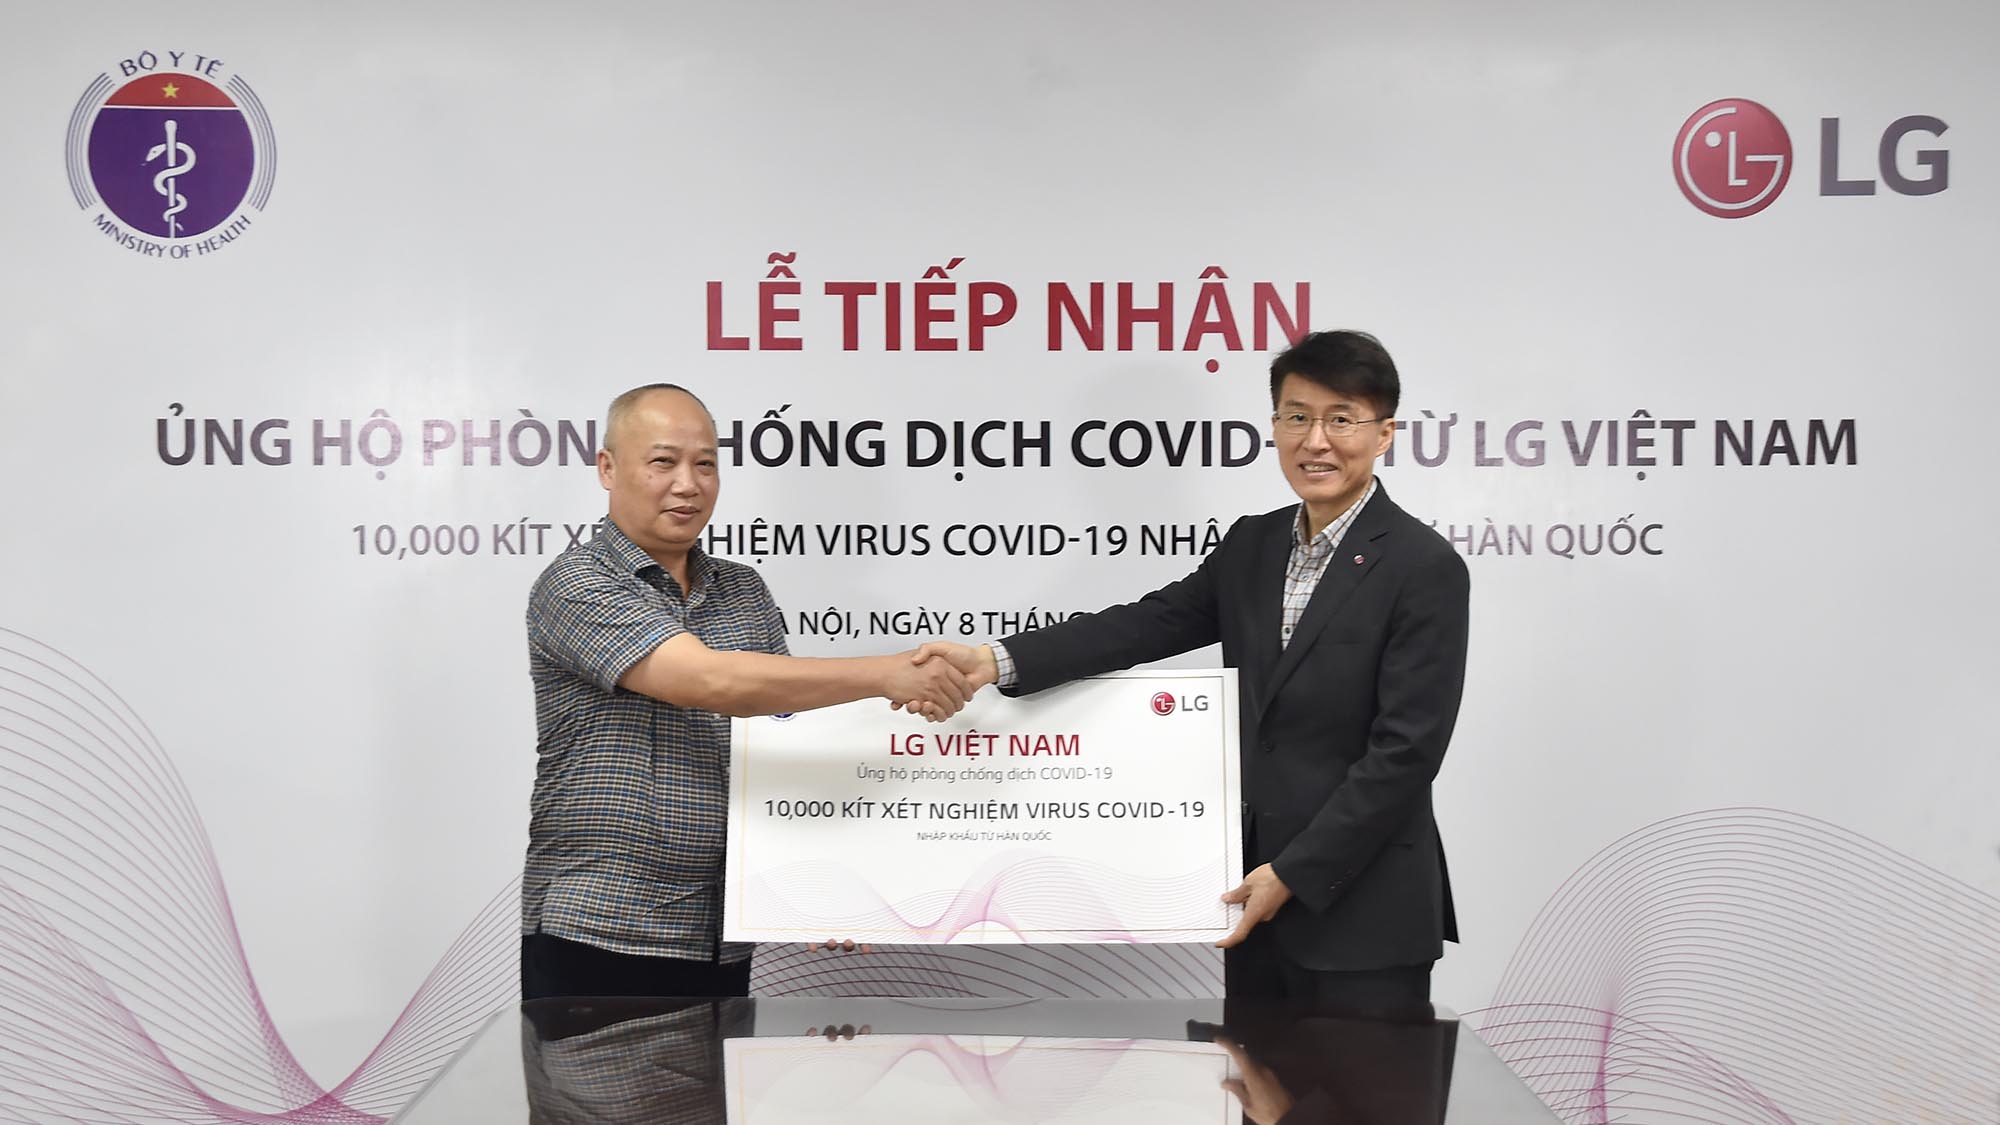 LG tài trợ Bộ y tế Việt Nam 10,000 bộ kit xét nghiệm Covid-19 và các trang thiết bị y tế nhập khẩu từ Hàn Quốc